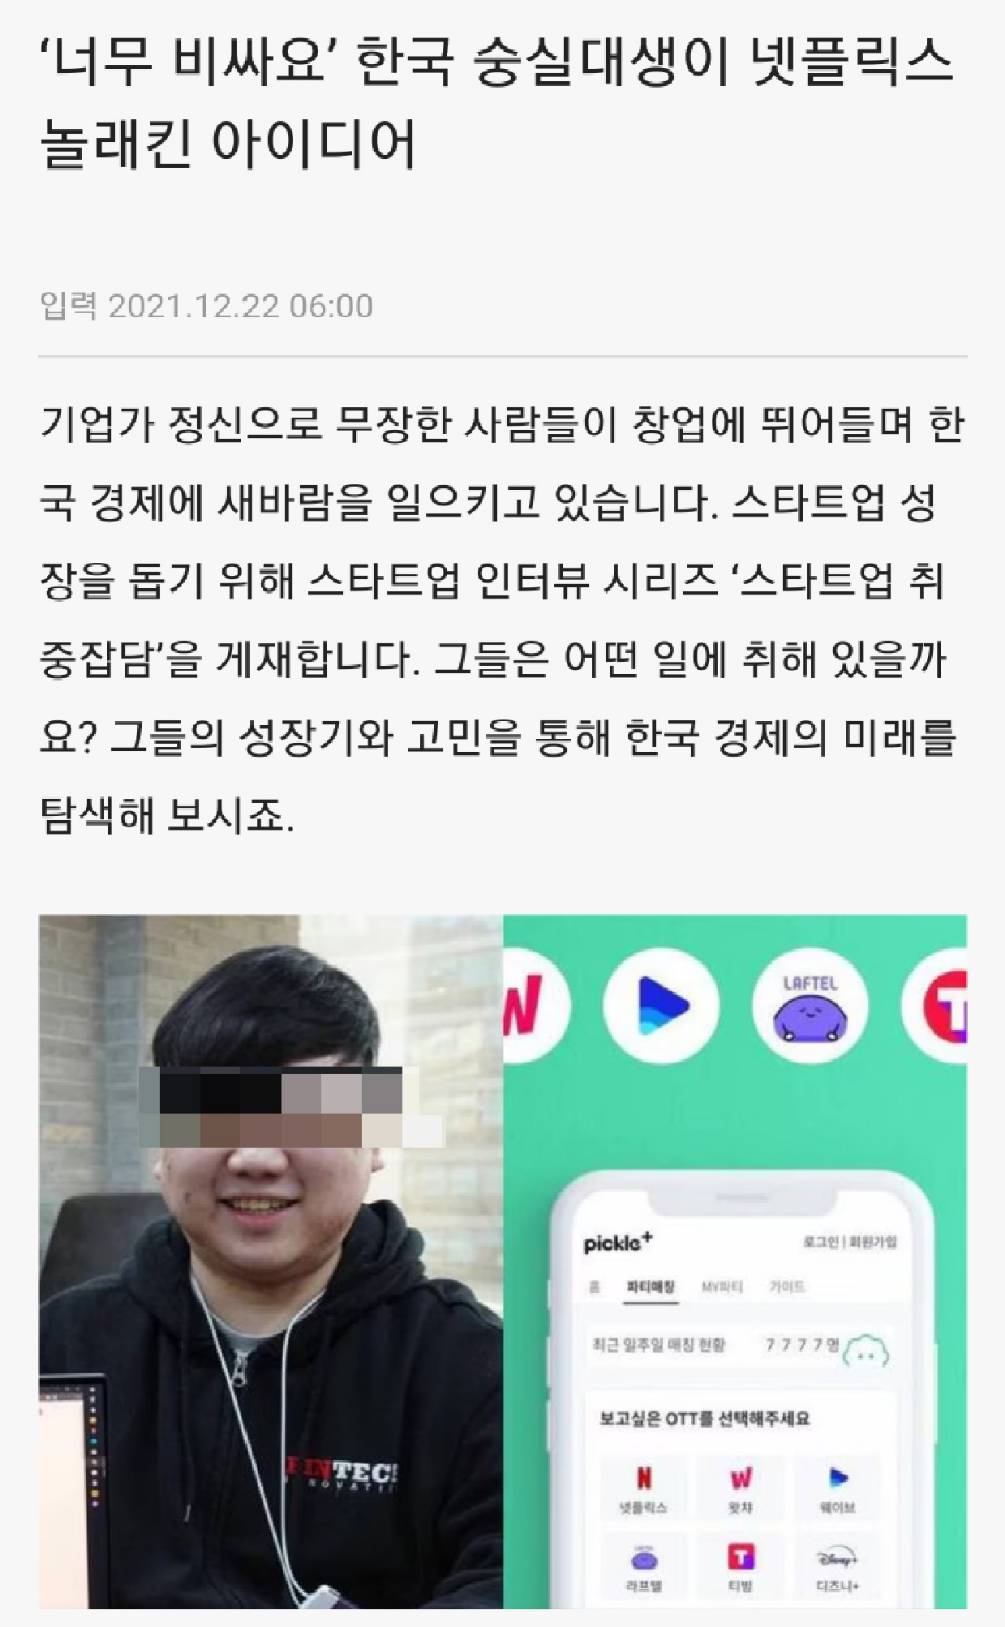 넷플릭스를 놀라게 한 한국인 대학생의 스타트업..jpg